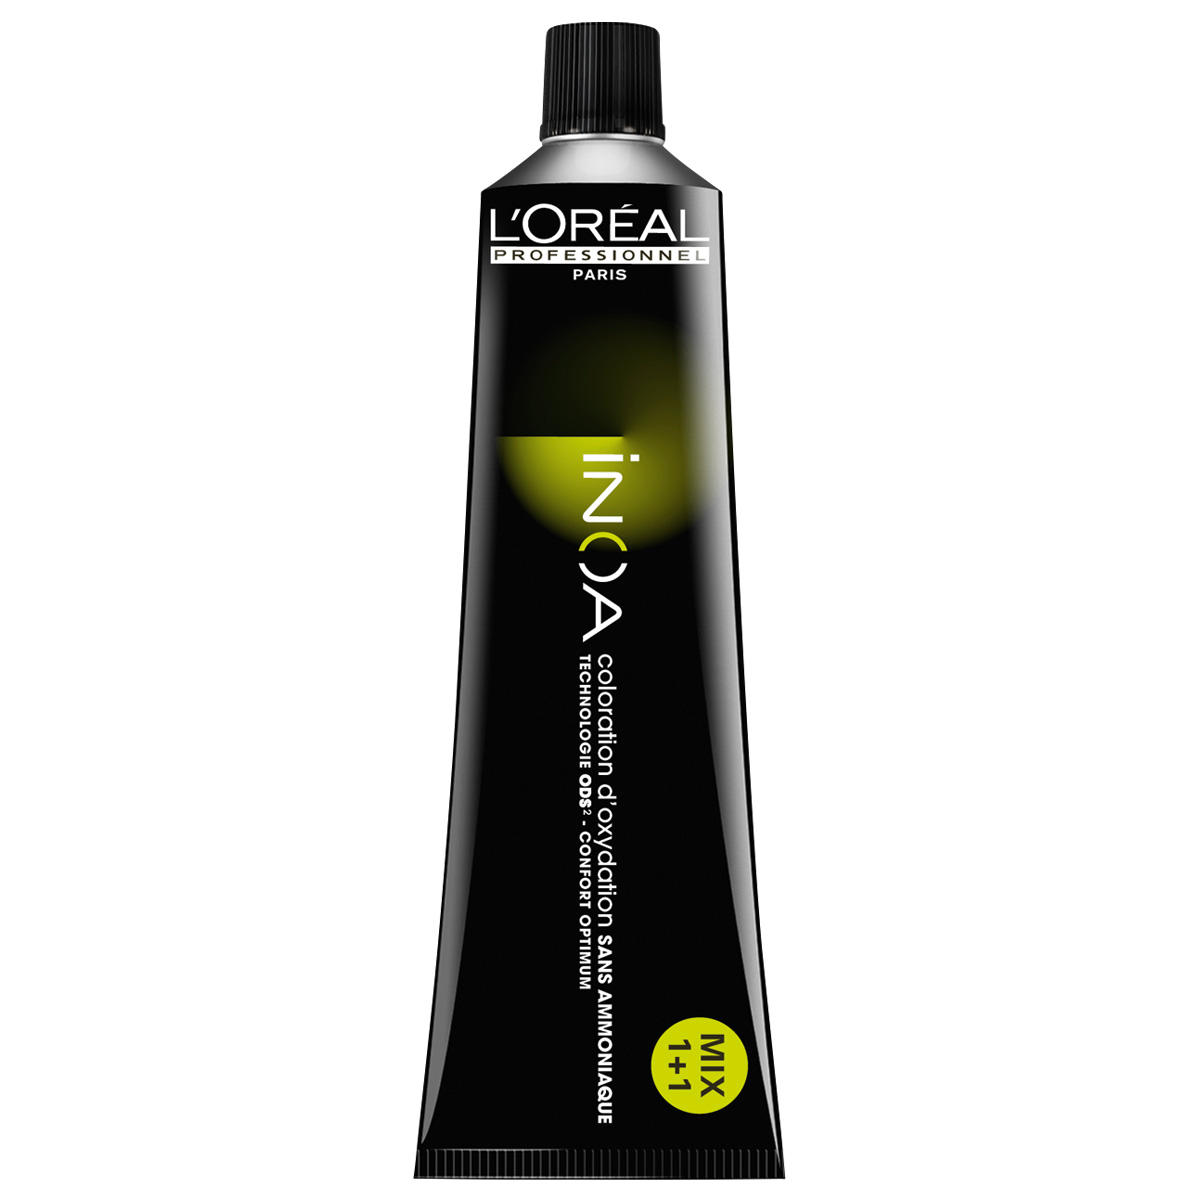 L'Oréal Professionnel Paris Coloration 1 Negro, tubo 60 ml